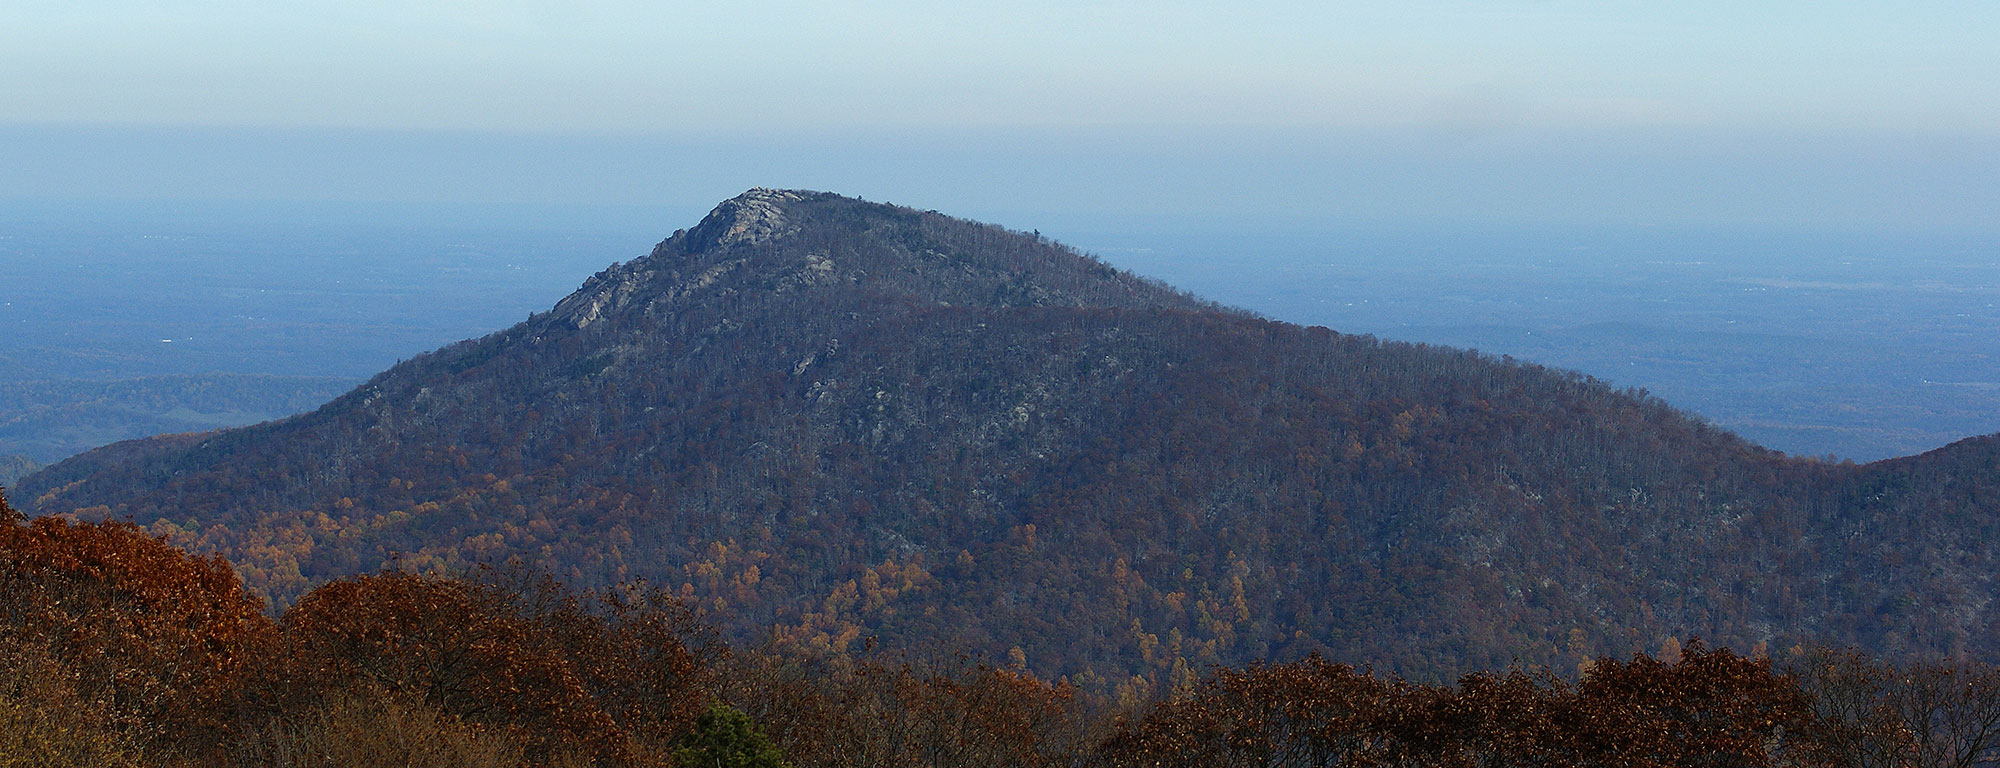 Photograph of Old Rag Mountain, Virginia.